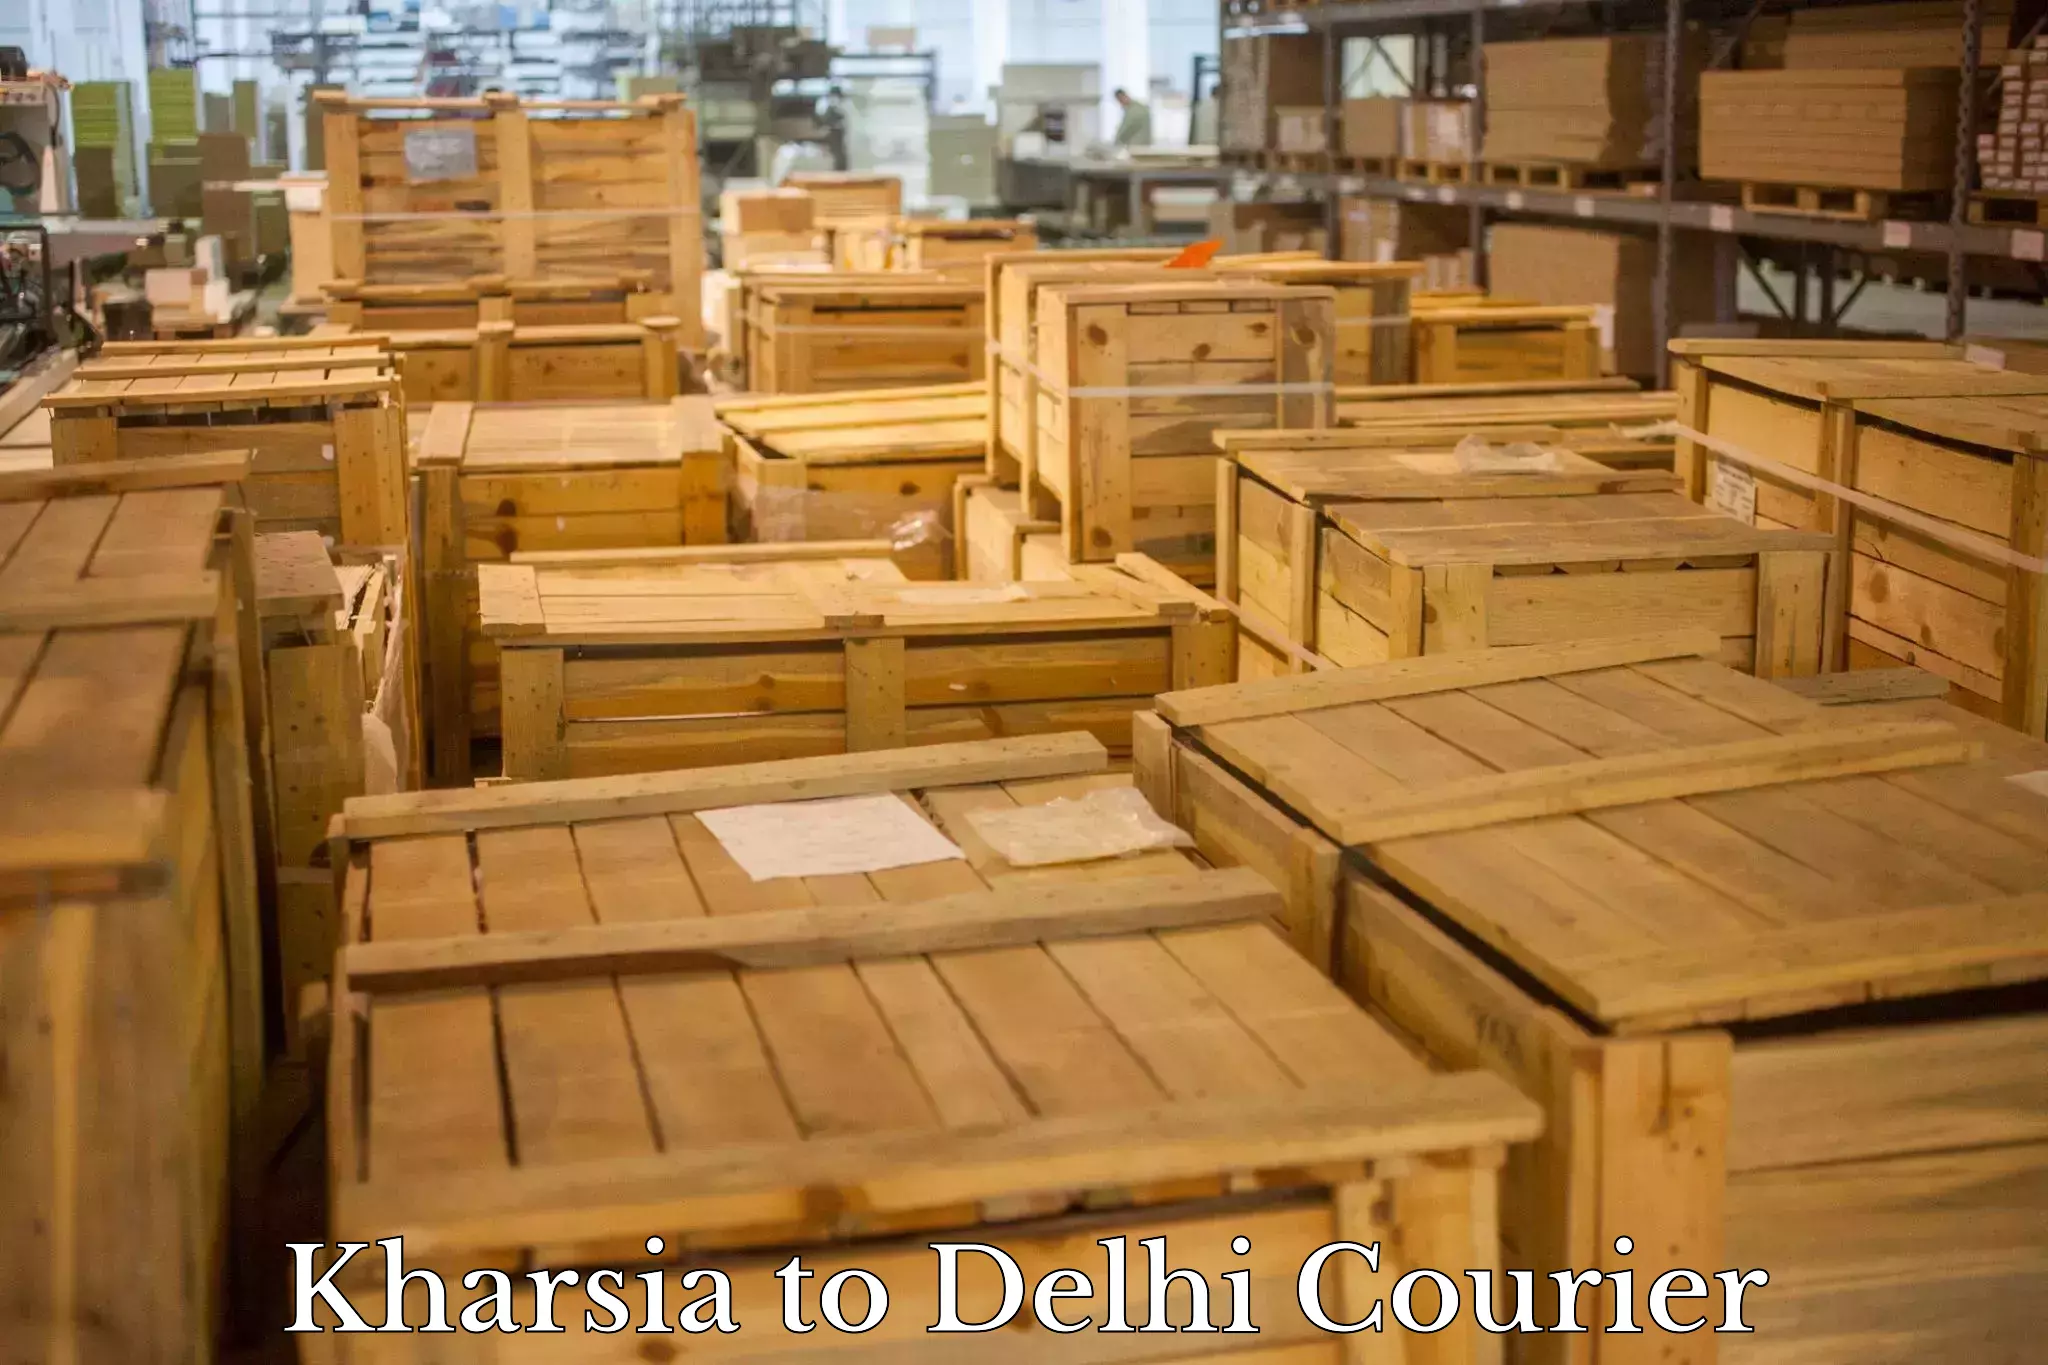 Flexible parcel services Kharsia to Jamia Hamdard New Delhi